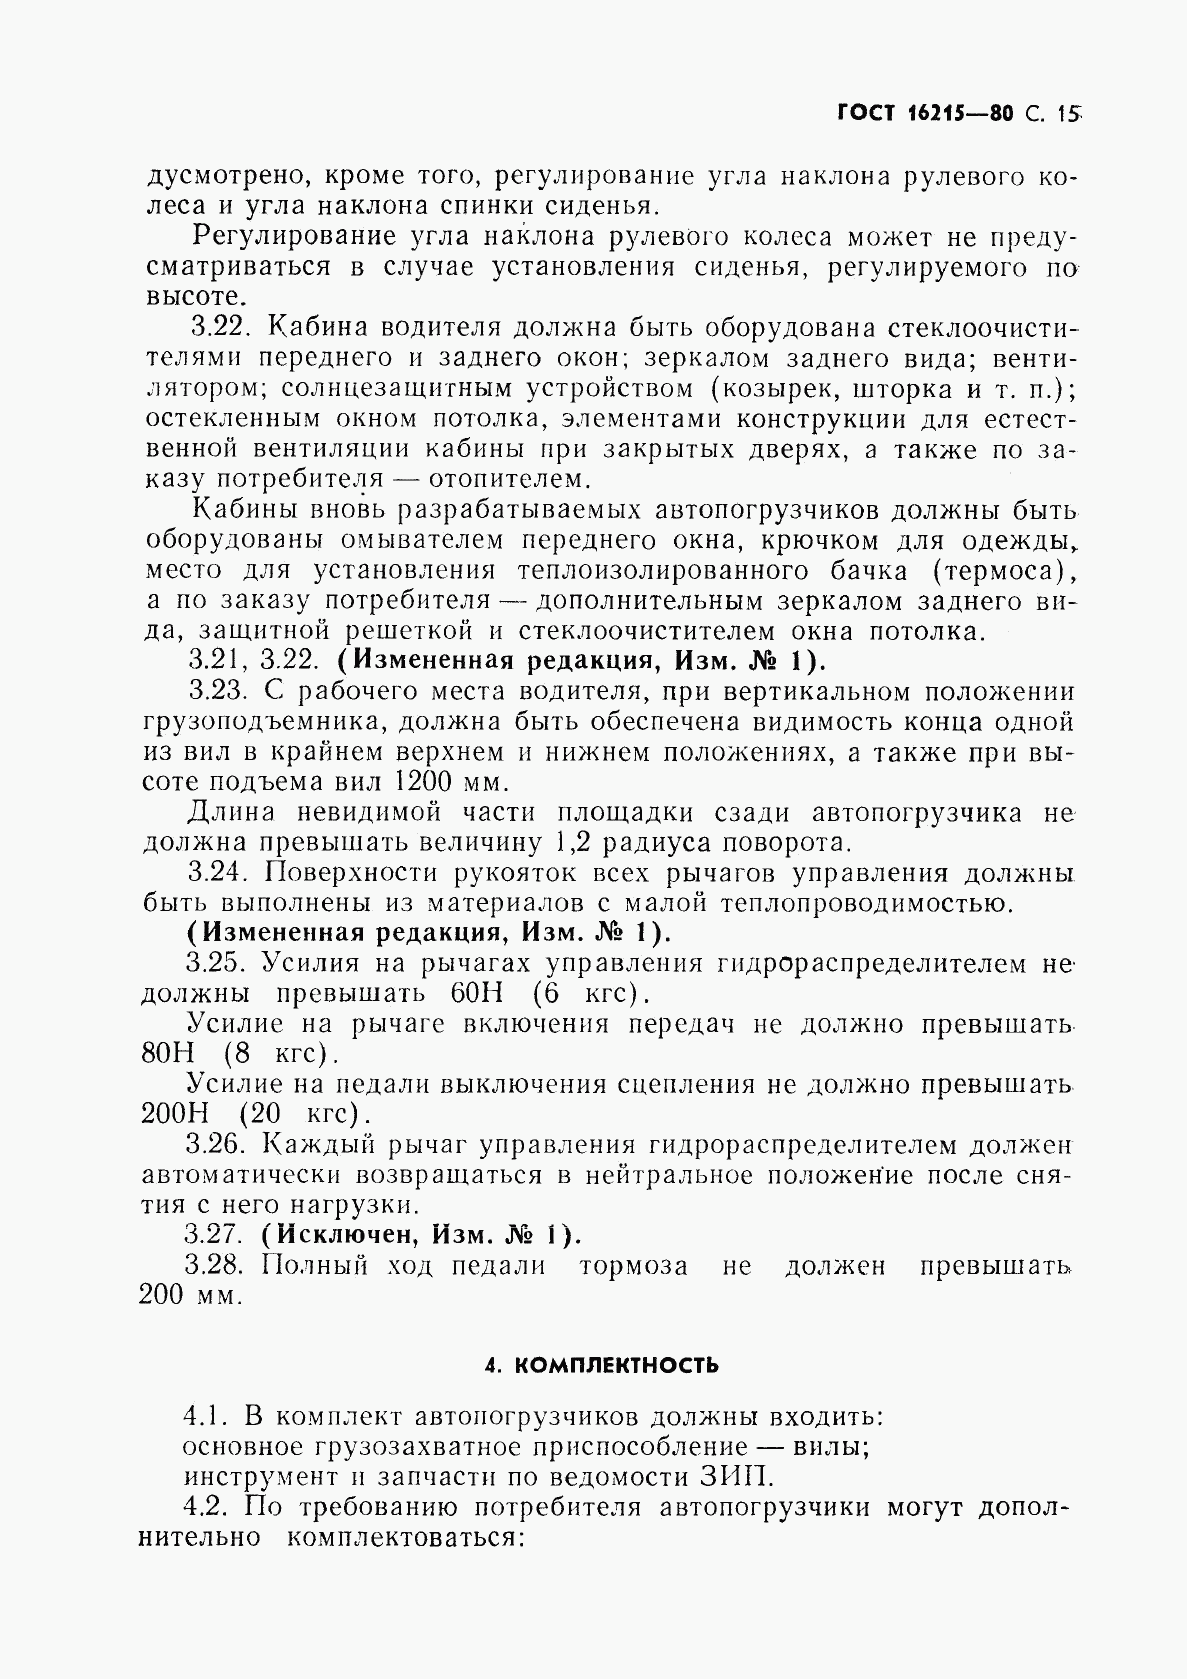 ГОСТ 16215-80, страница 17